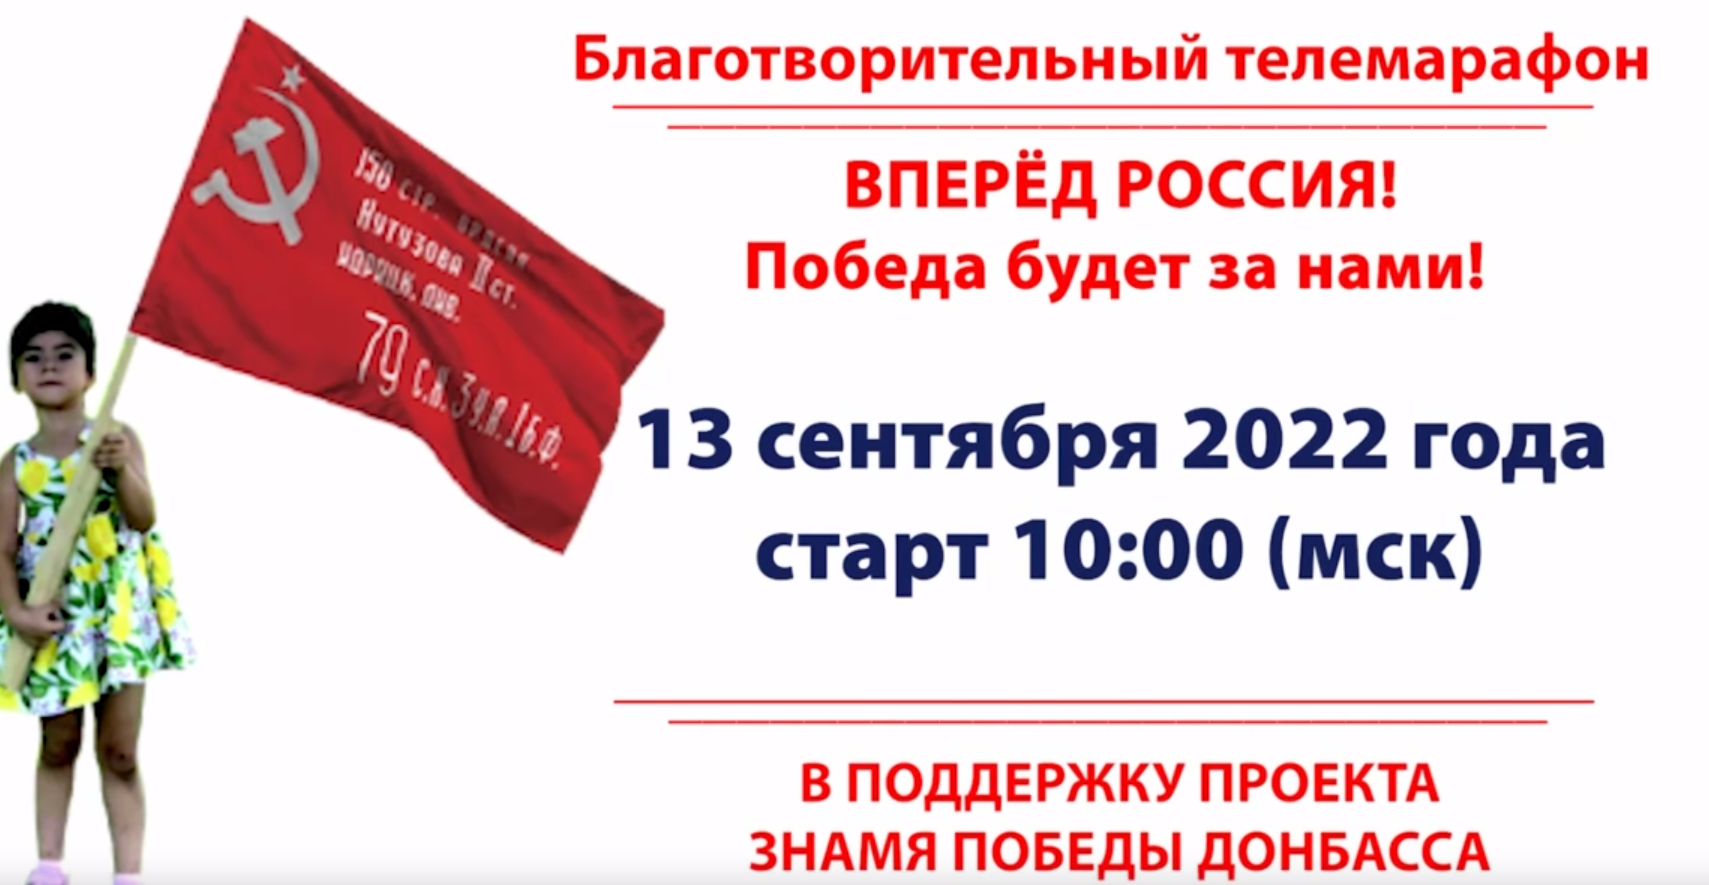 Жителей Марий Эл приглашают к участию в проекте "Знамя Победы Донбасса"